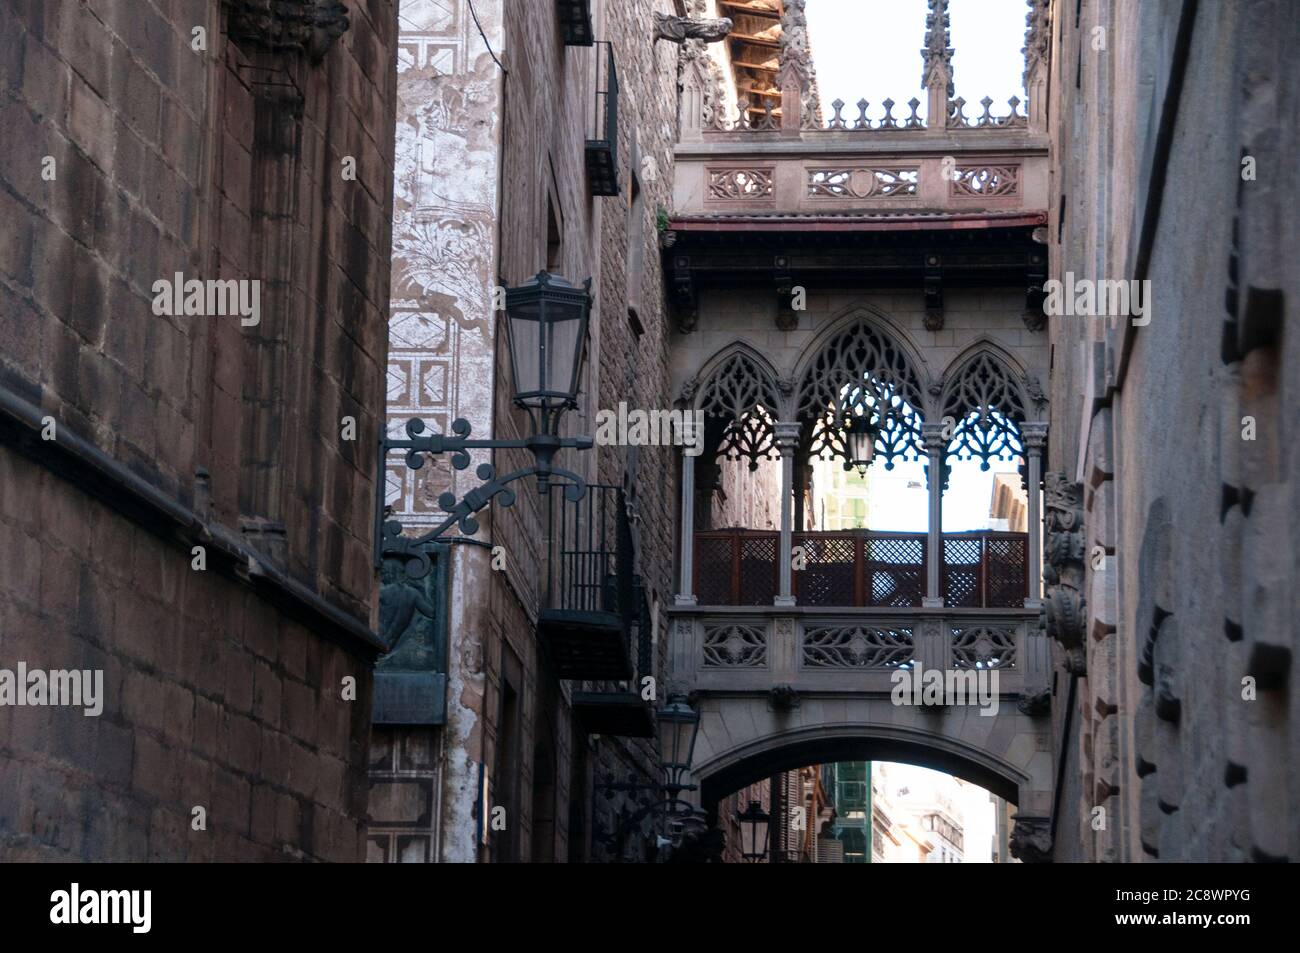 Pont del Bisbe costruito nel 1928 da Joan Rubió a Barcellona, in Spagna, ponte in stile fiammeggiante che attraversa Carrer Bisbe nel quartiere gotico. Foto Stock